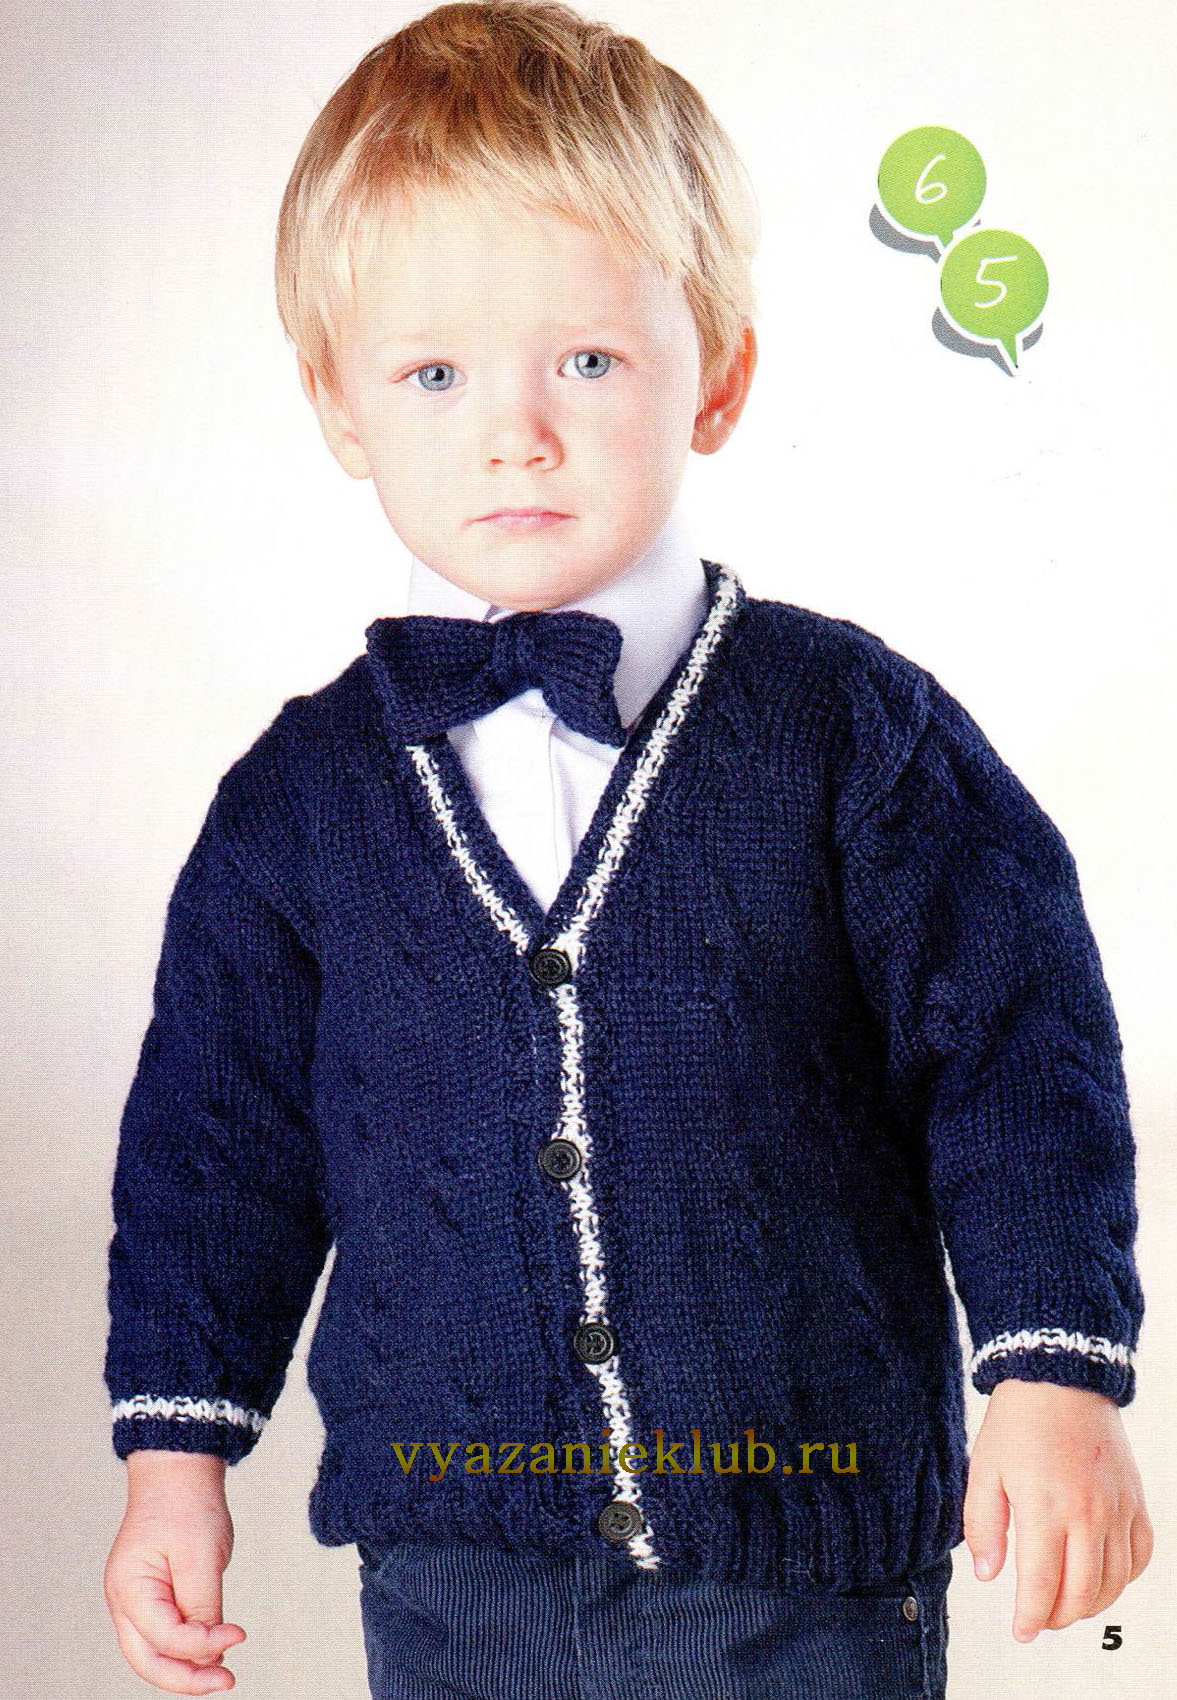 Вязание для детей — баштрен.рф - схемы с описанием для вязания спицами и крючком — Страница №19